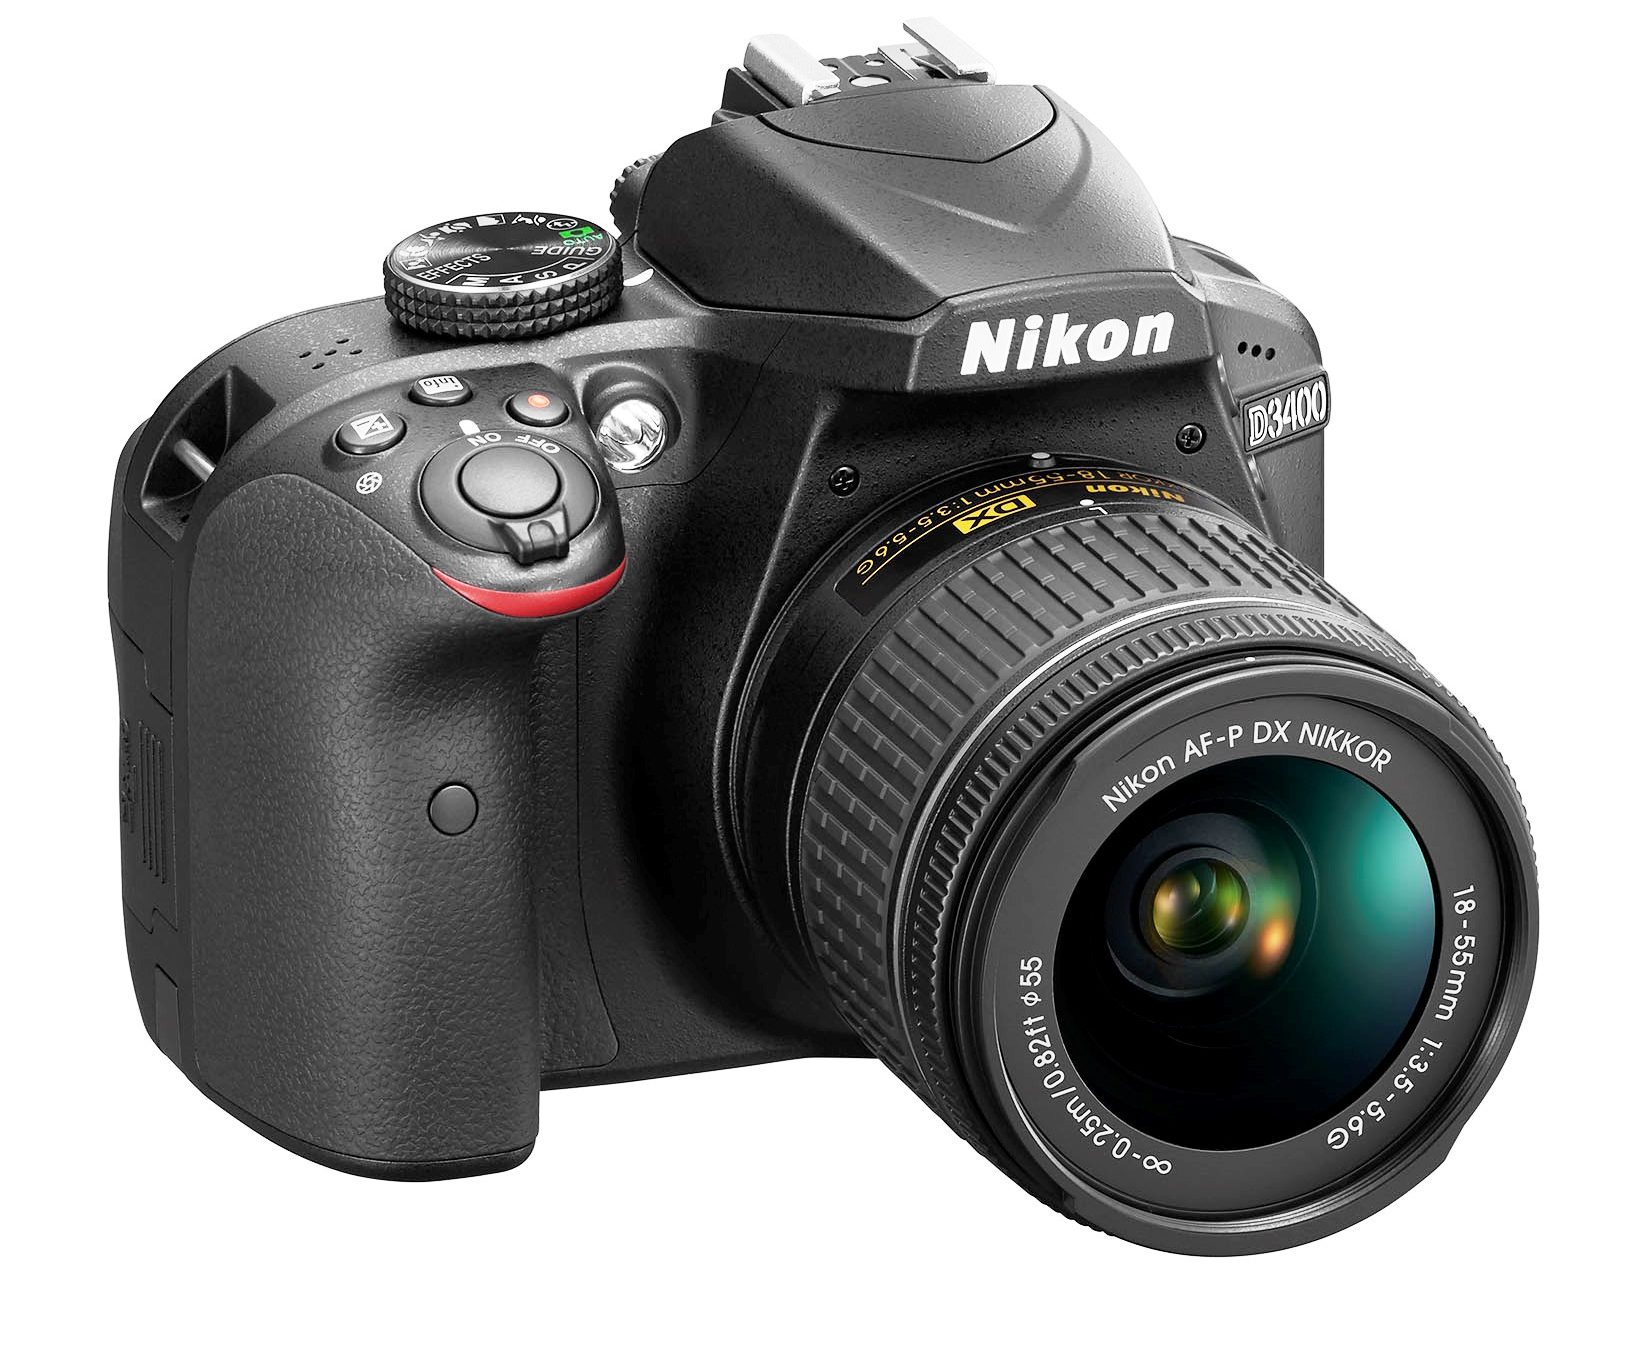 Con Nikon D3400 foto straordinarie e condivisione immediata